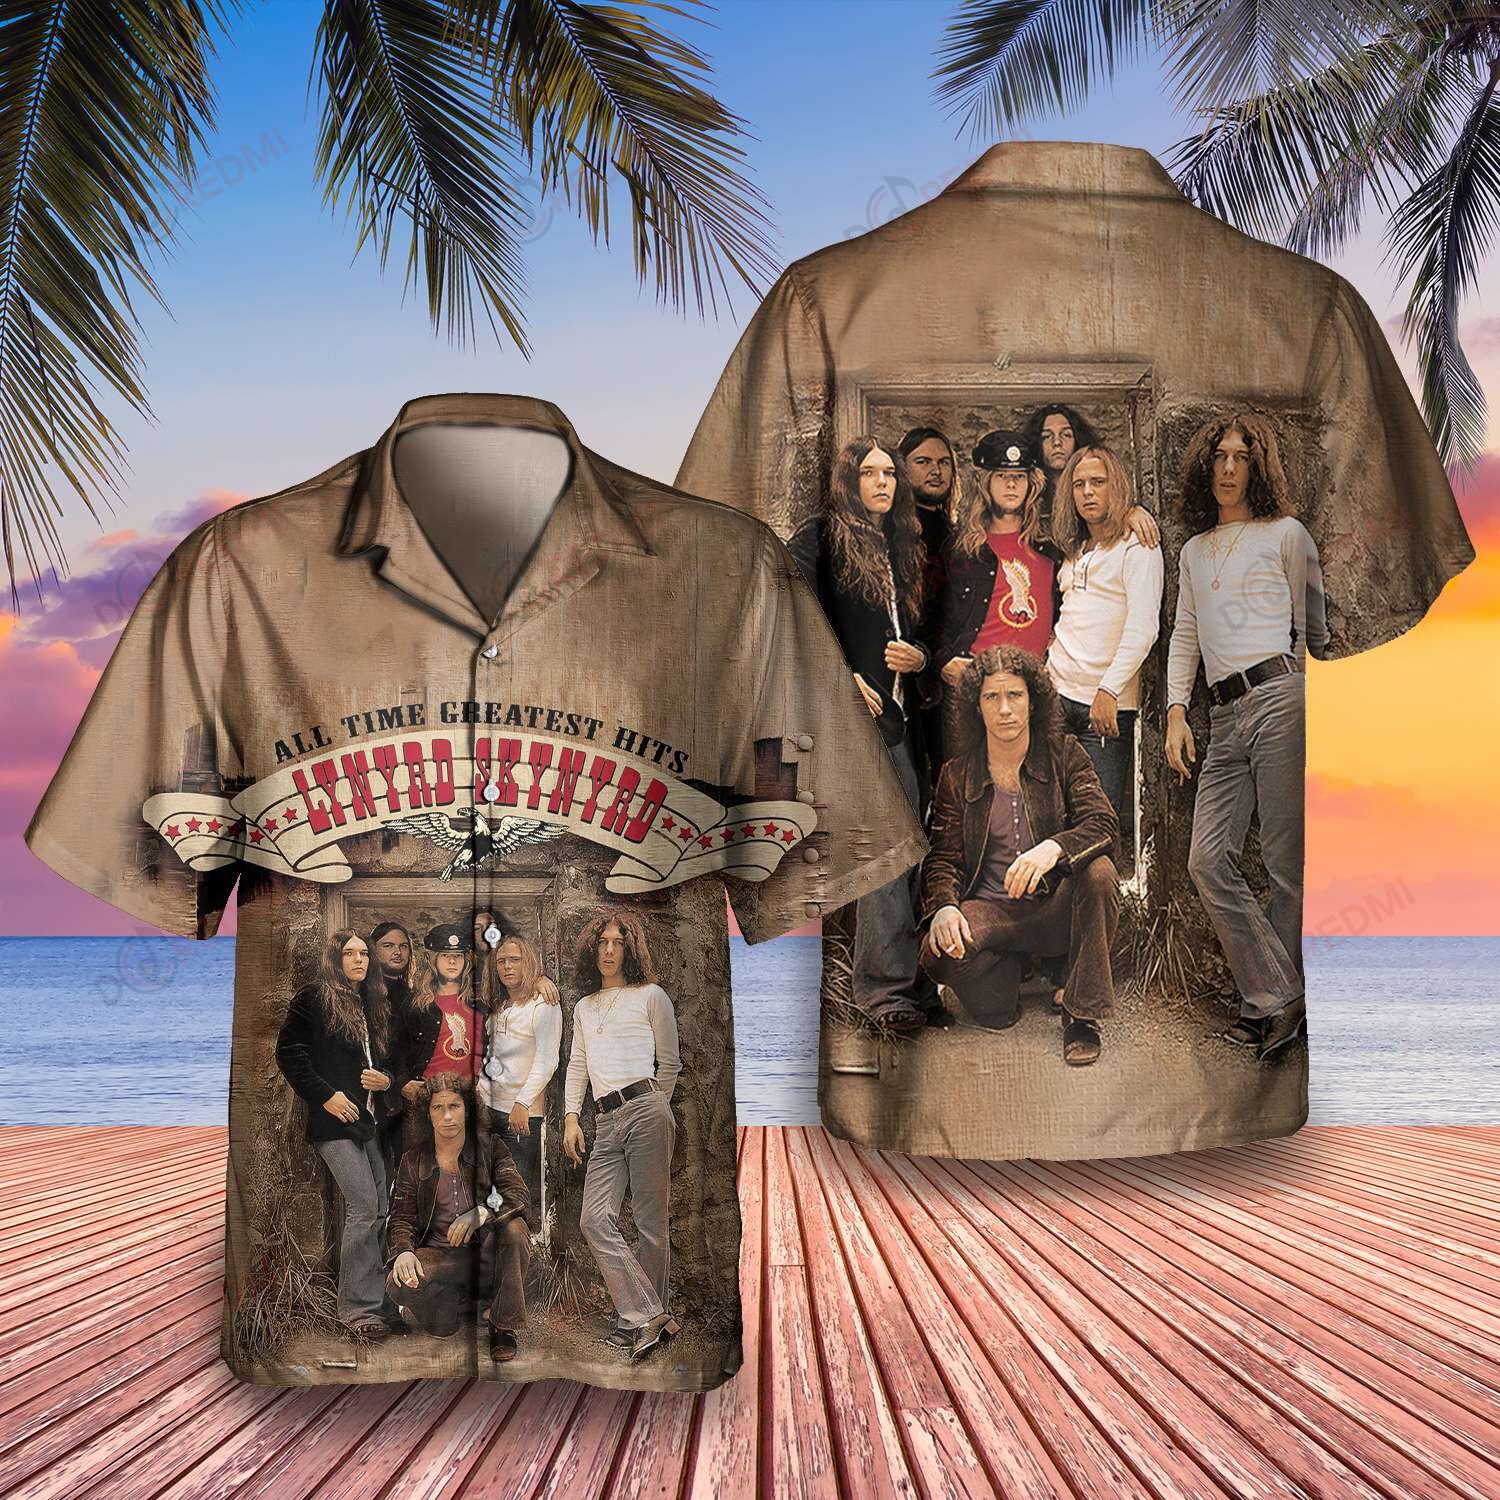 HOT Lynyrd Skynyrd Band Greatest Hits Hawaii Shirt